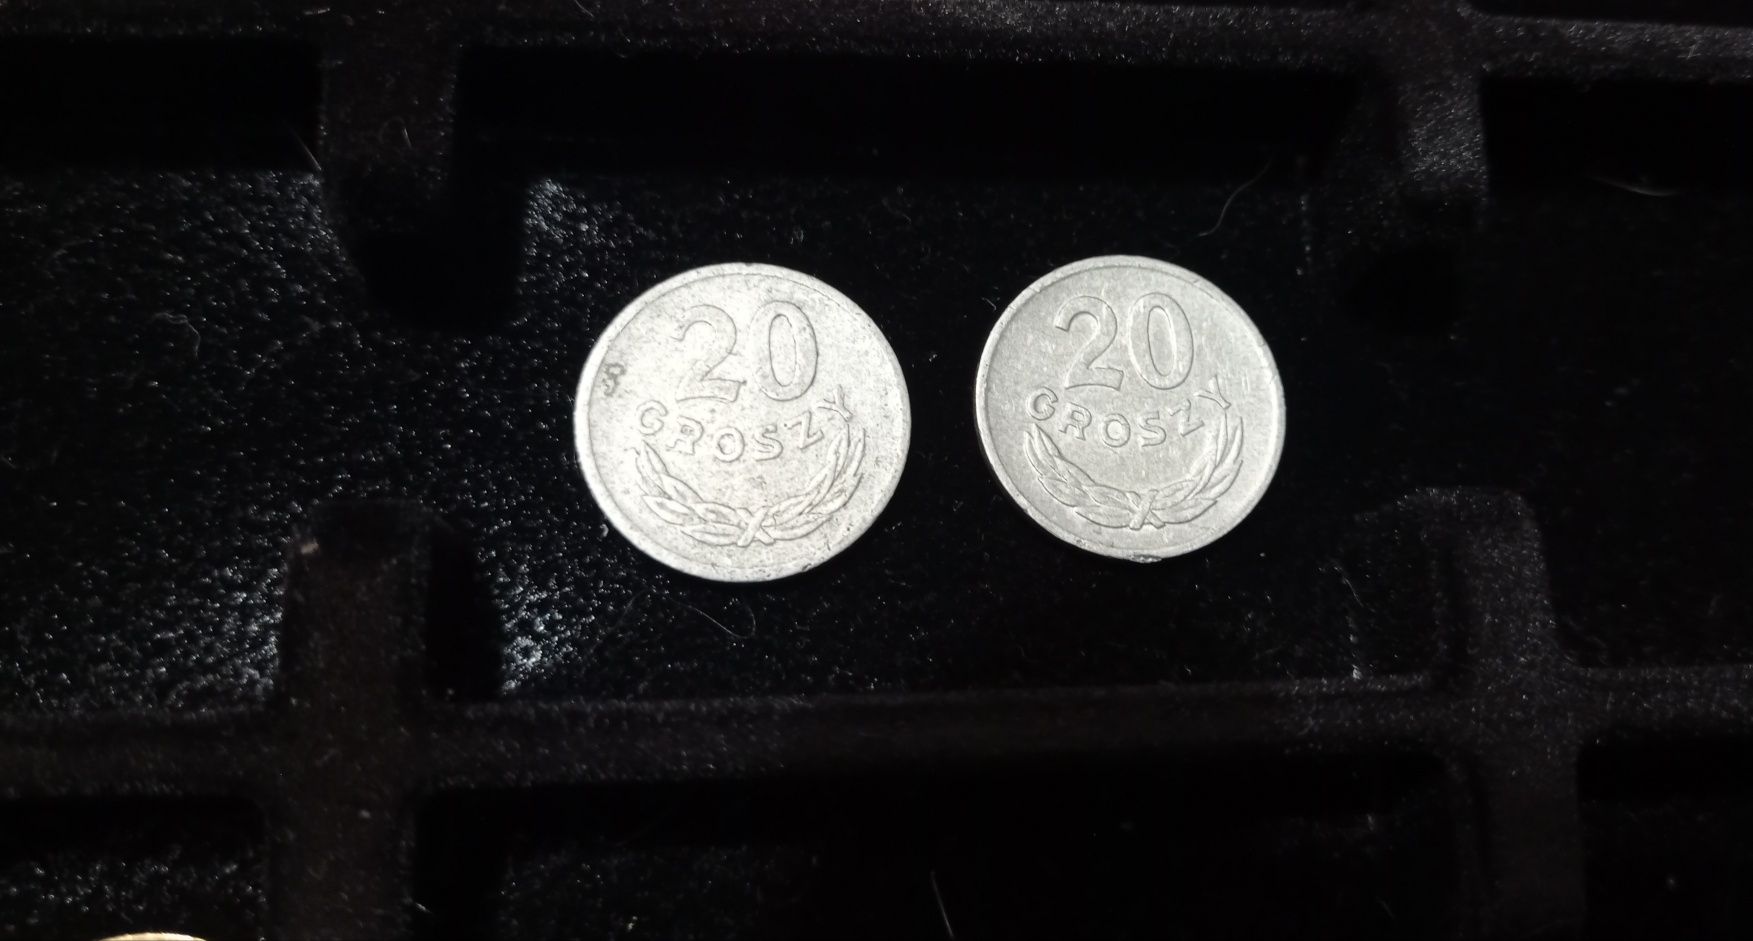 Monety 20 groszy z 1973 roku zm i bzm